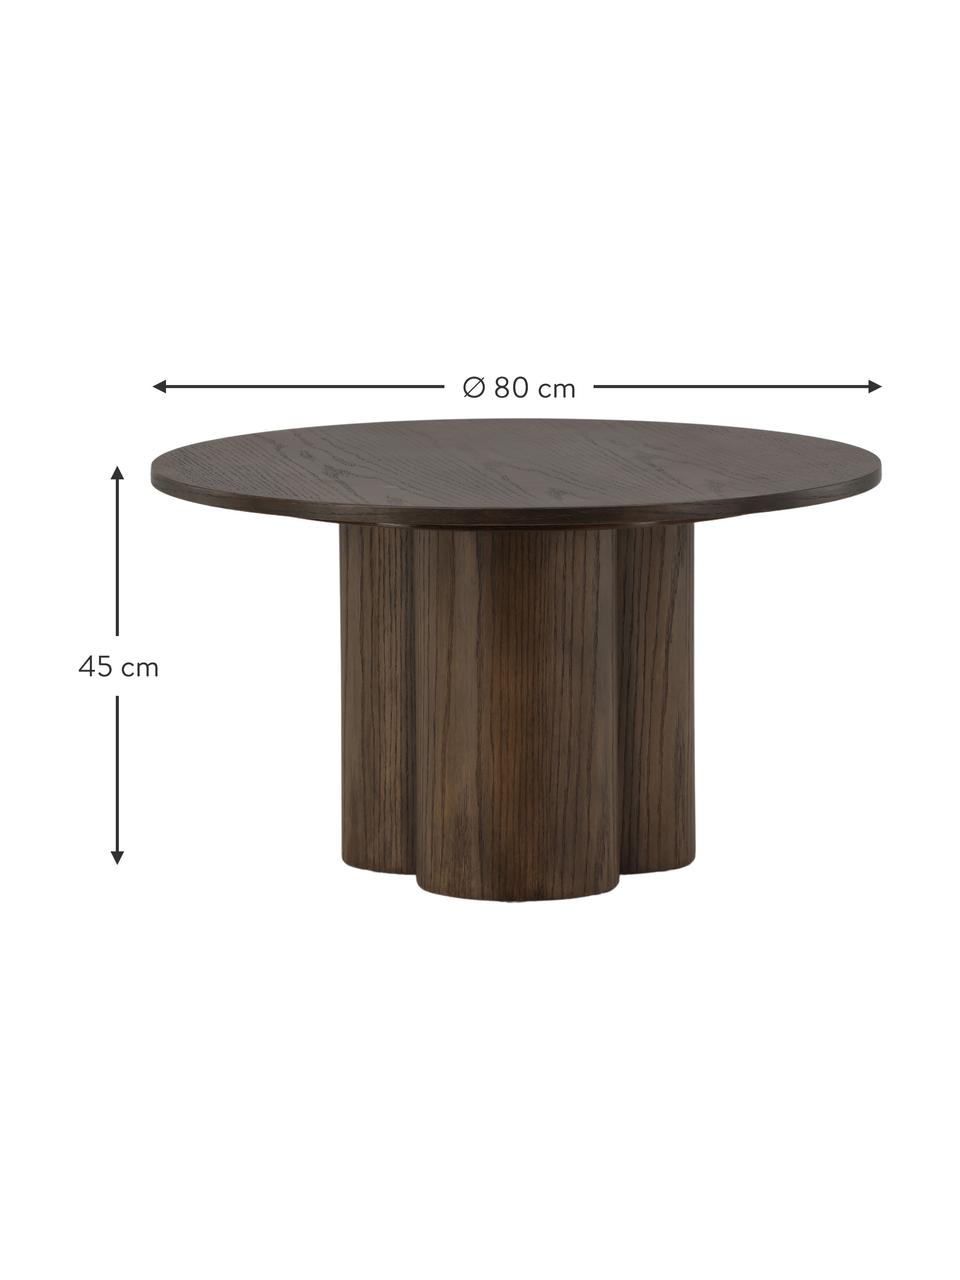 Kulatý dřevěný konferenční stolek Olivia, MDF deska (dřevovláknitá deska střední hustoty), MDF deska (dřevovláknitá deska střední hustoty), tmavě lakovaný, Ø 80 cm